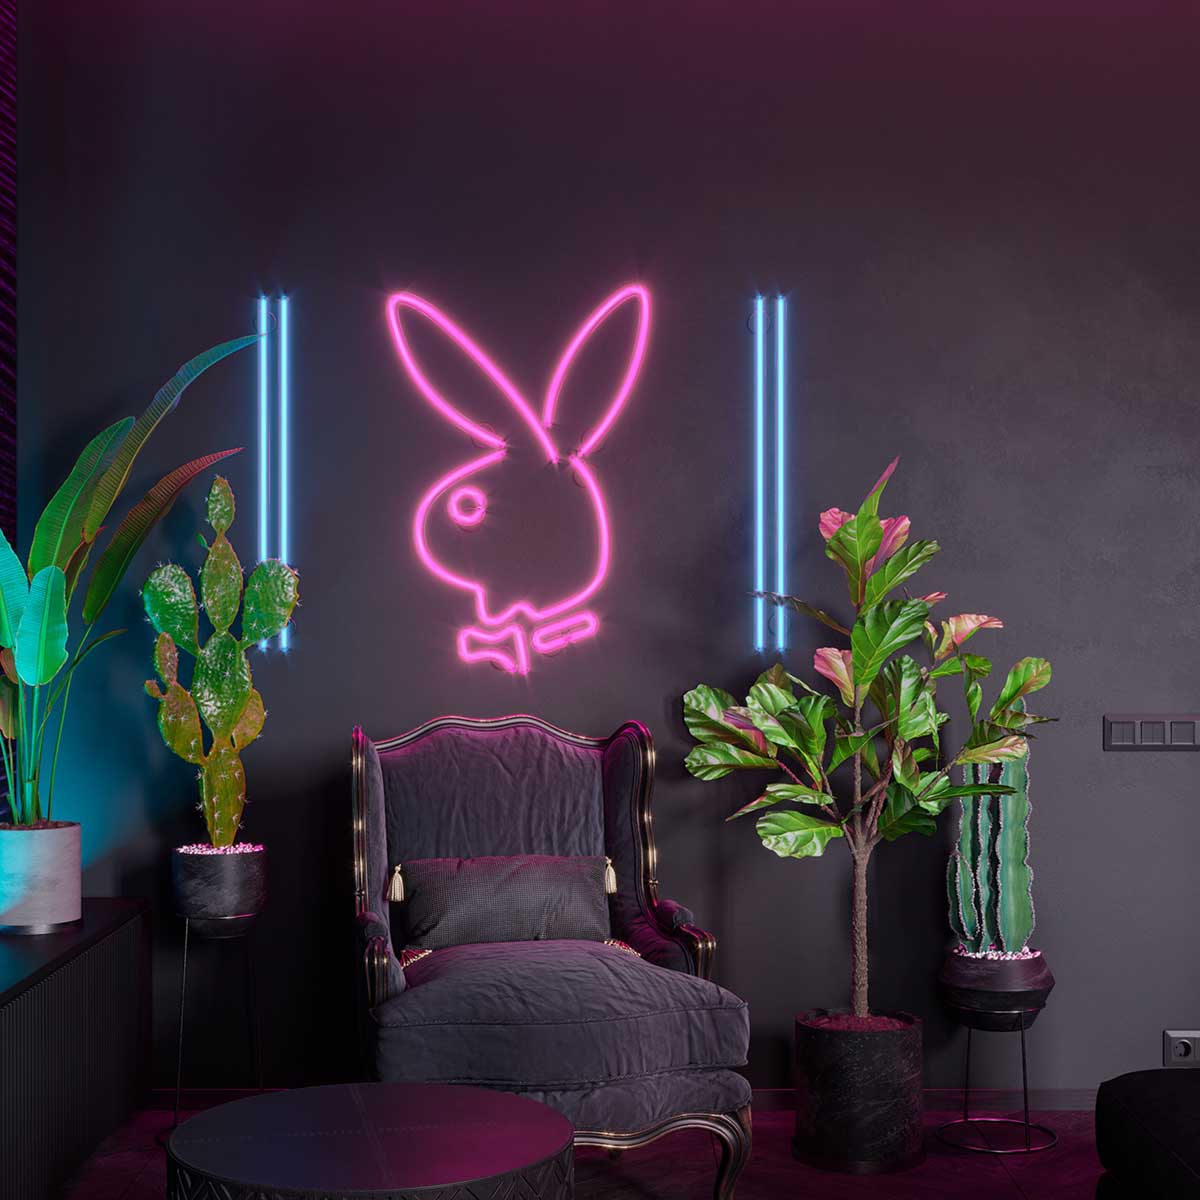 Góc chill phòng khách với chú thỏ Playboy